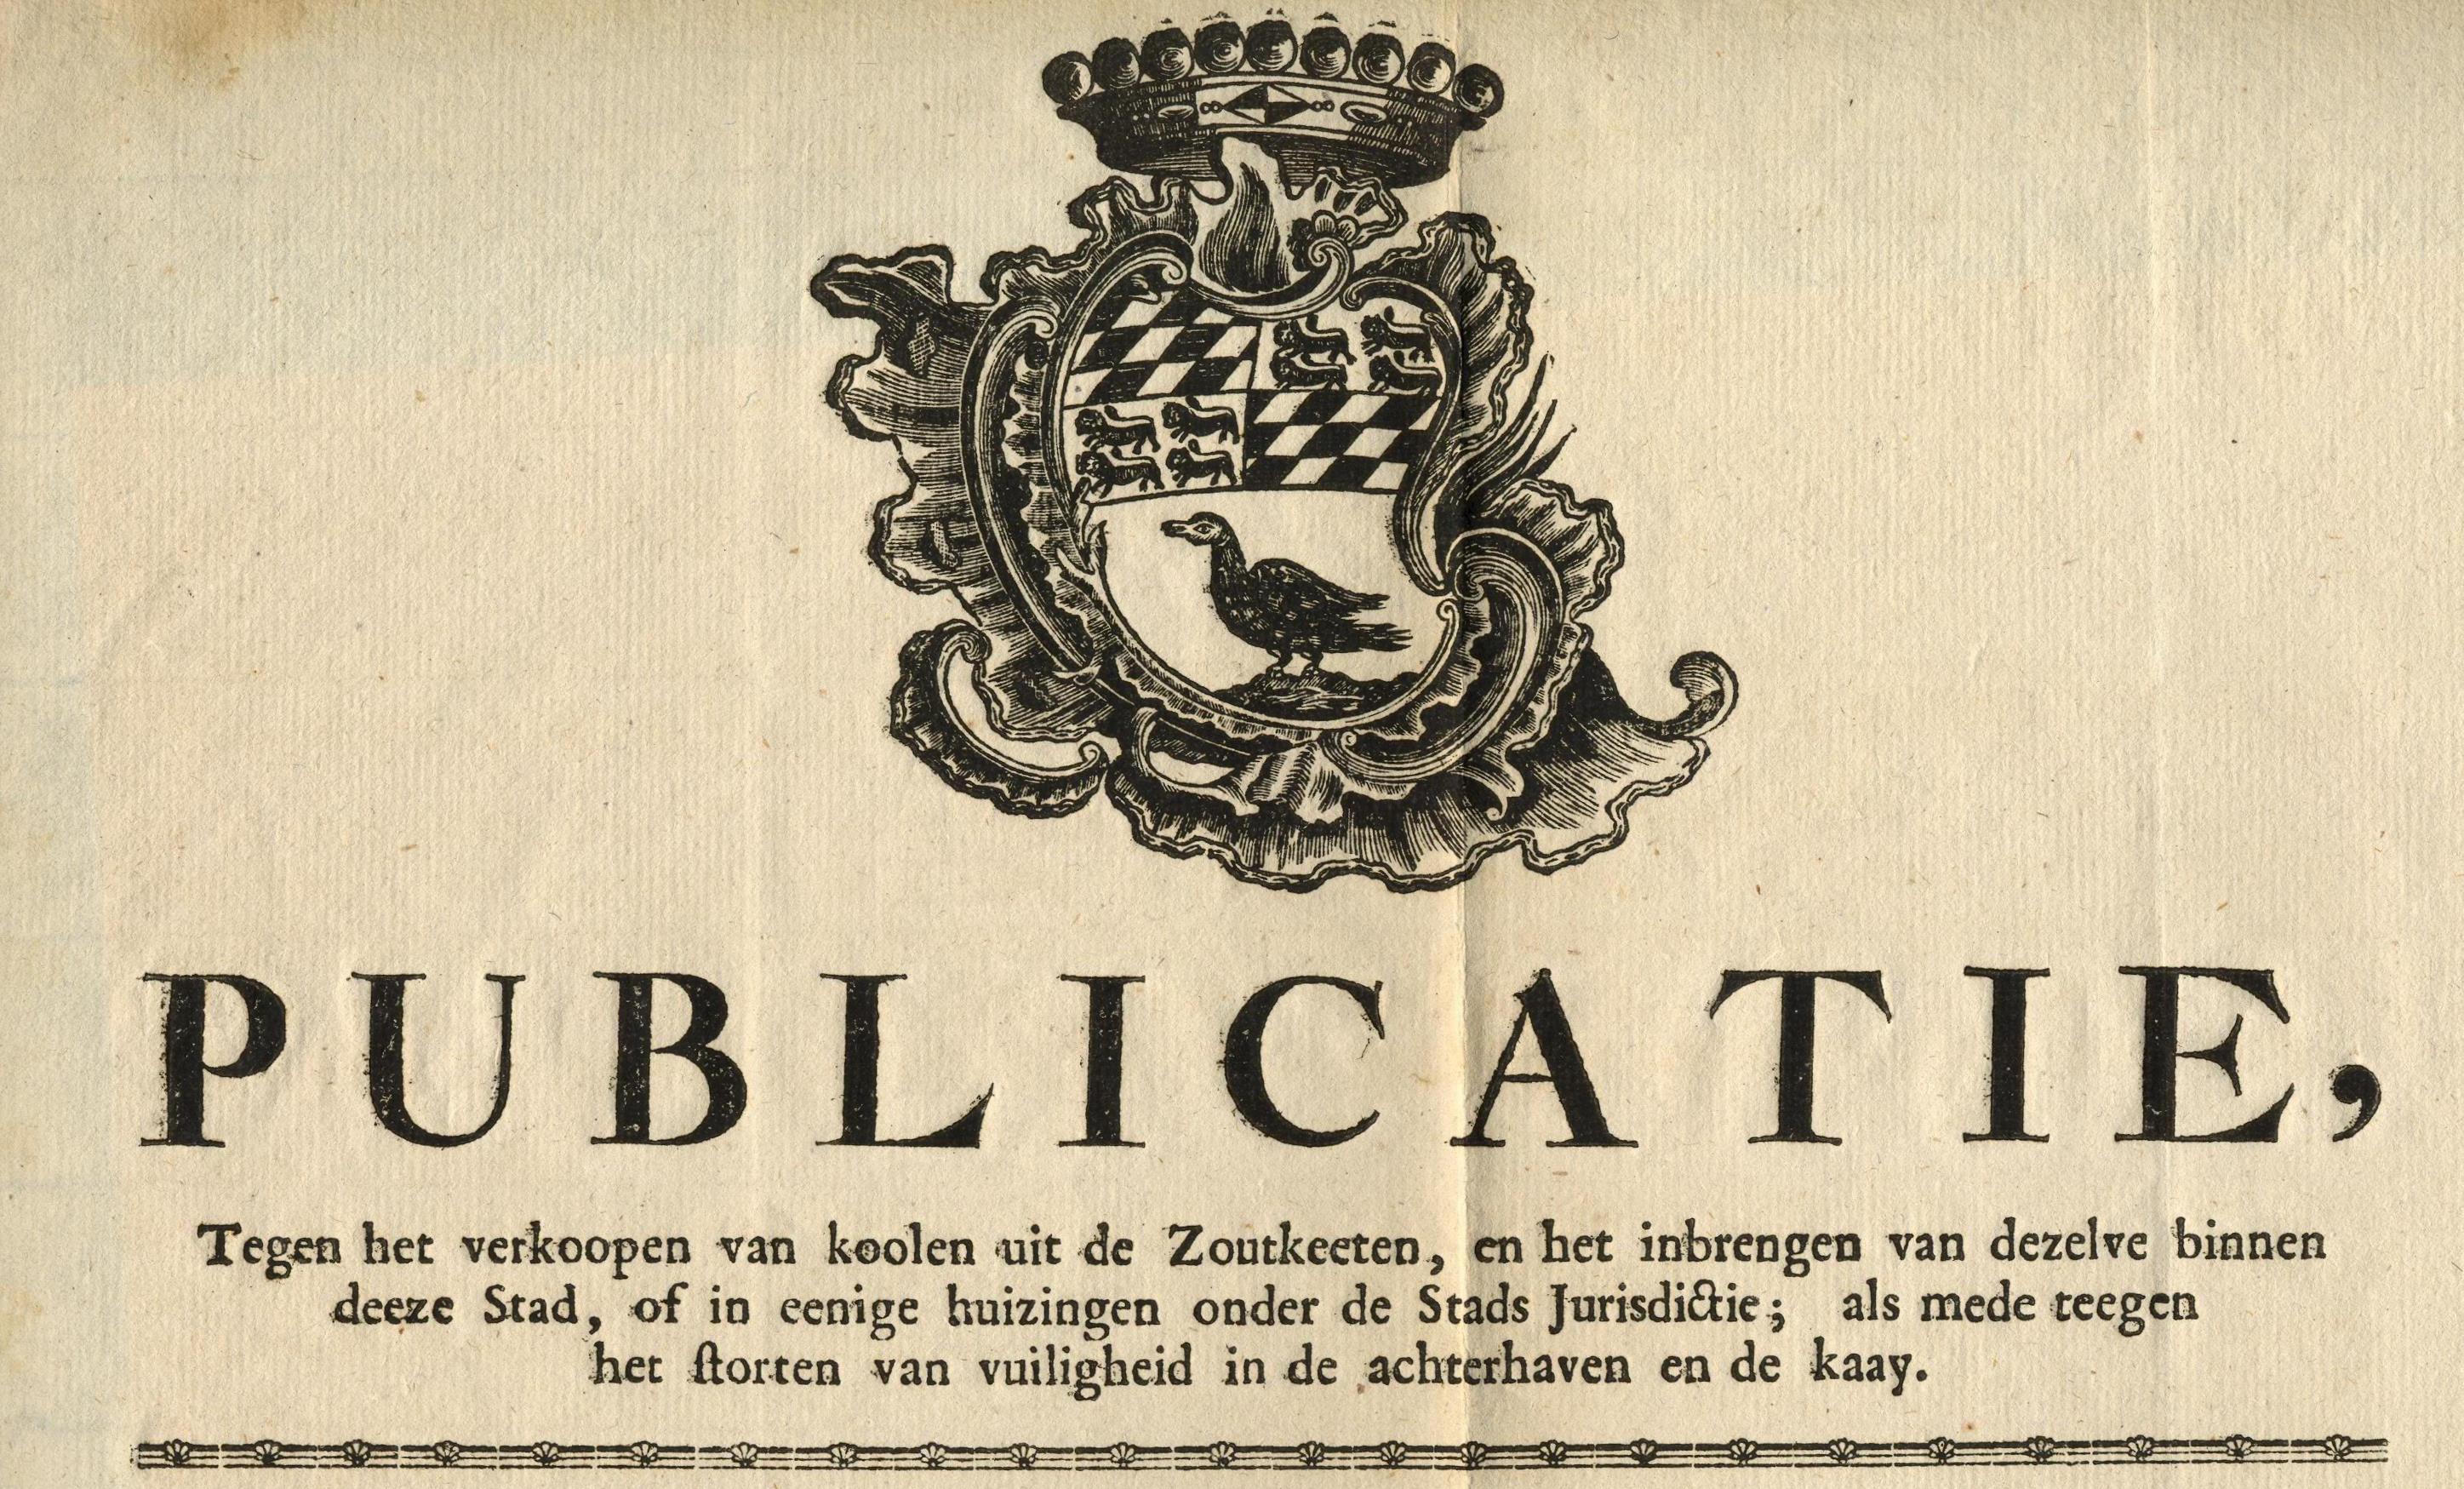 Publicatie tegen het verkopen van steenkool uit de zoutketen, 1779.